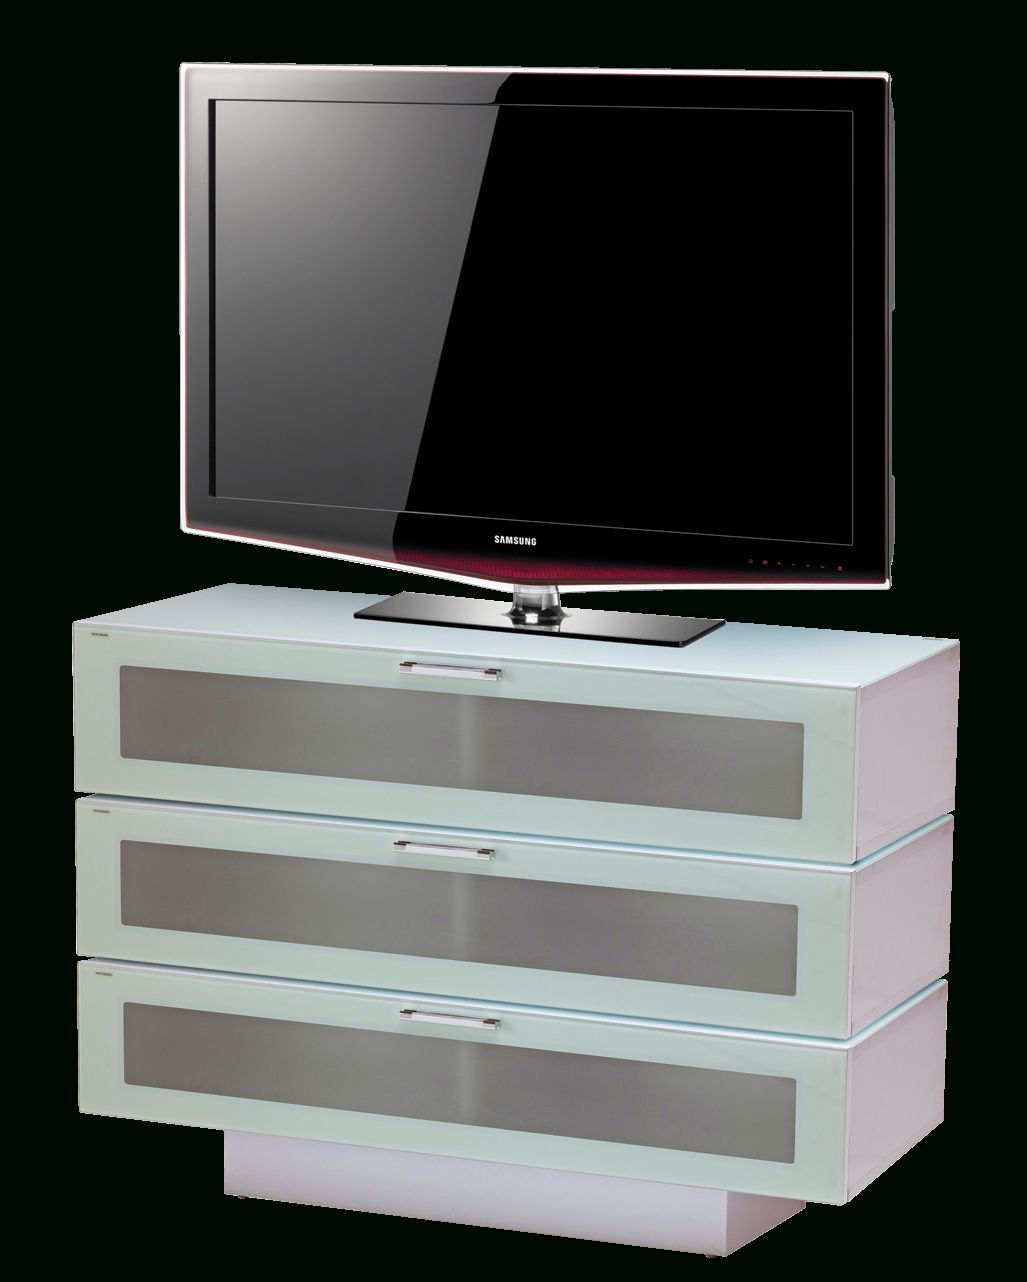 Stil Stand Gloss White Wooden Tv Cabinet – Stuk4001 3 Inside Stil Tv Stands (View 4 of 15)